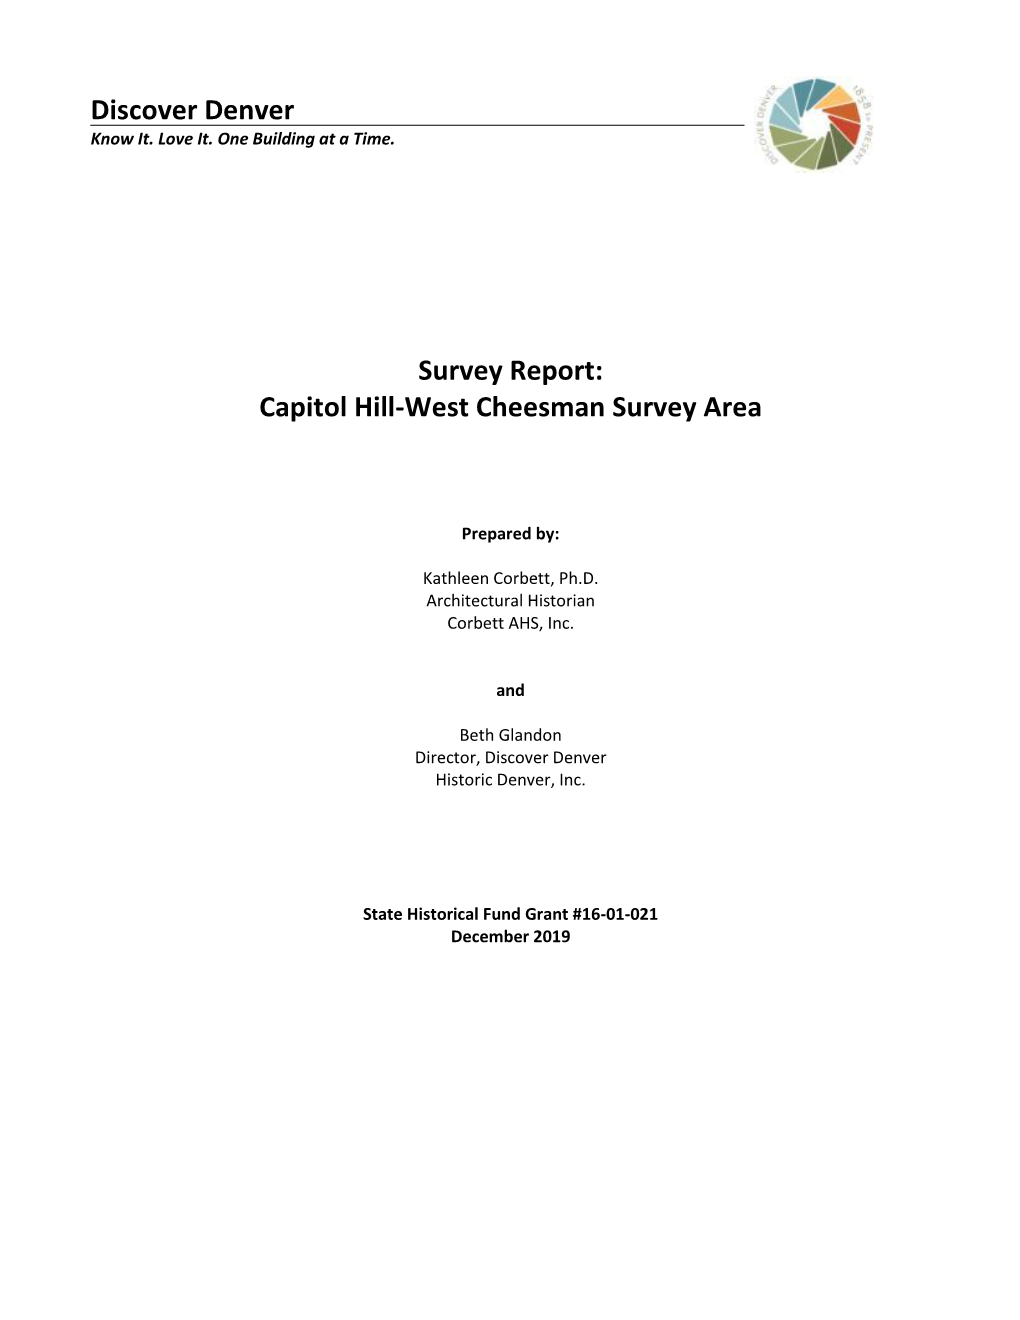 Discover Denver Survey Report: Capitol Hill-West Cheesman Survey